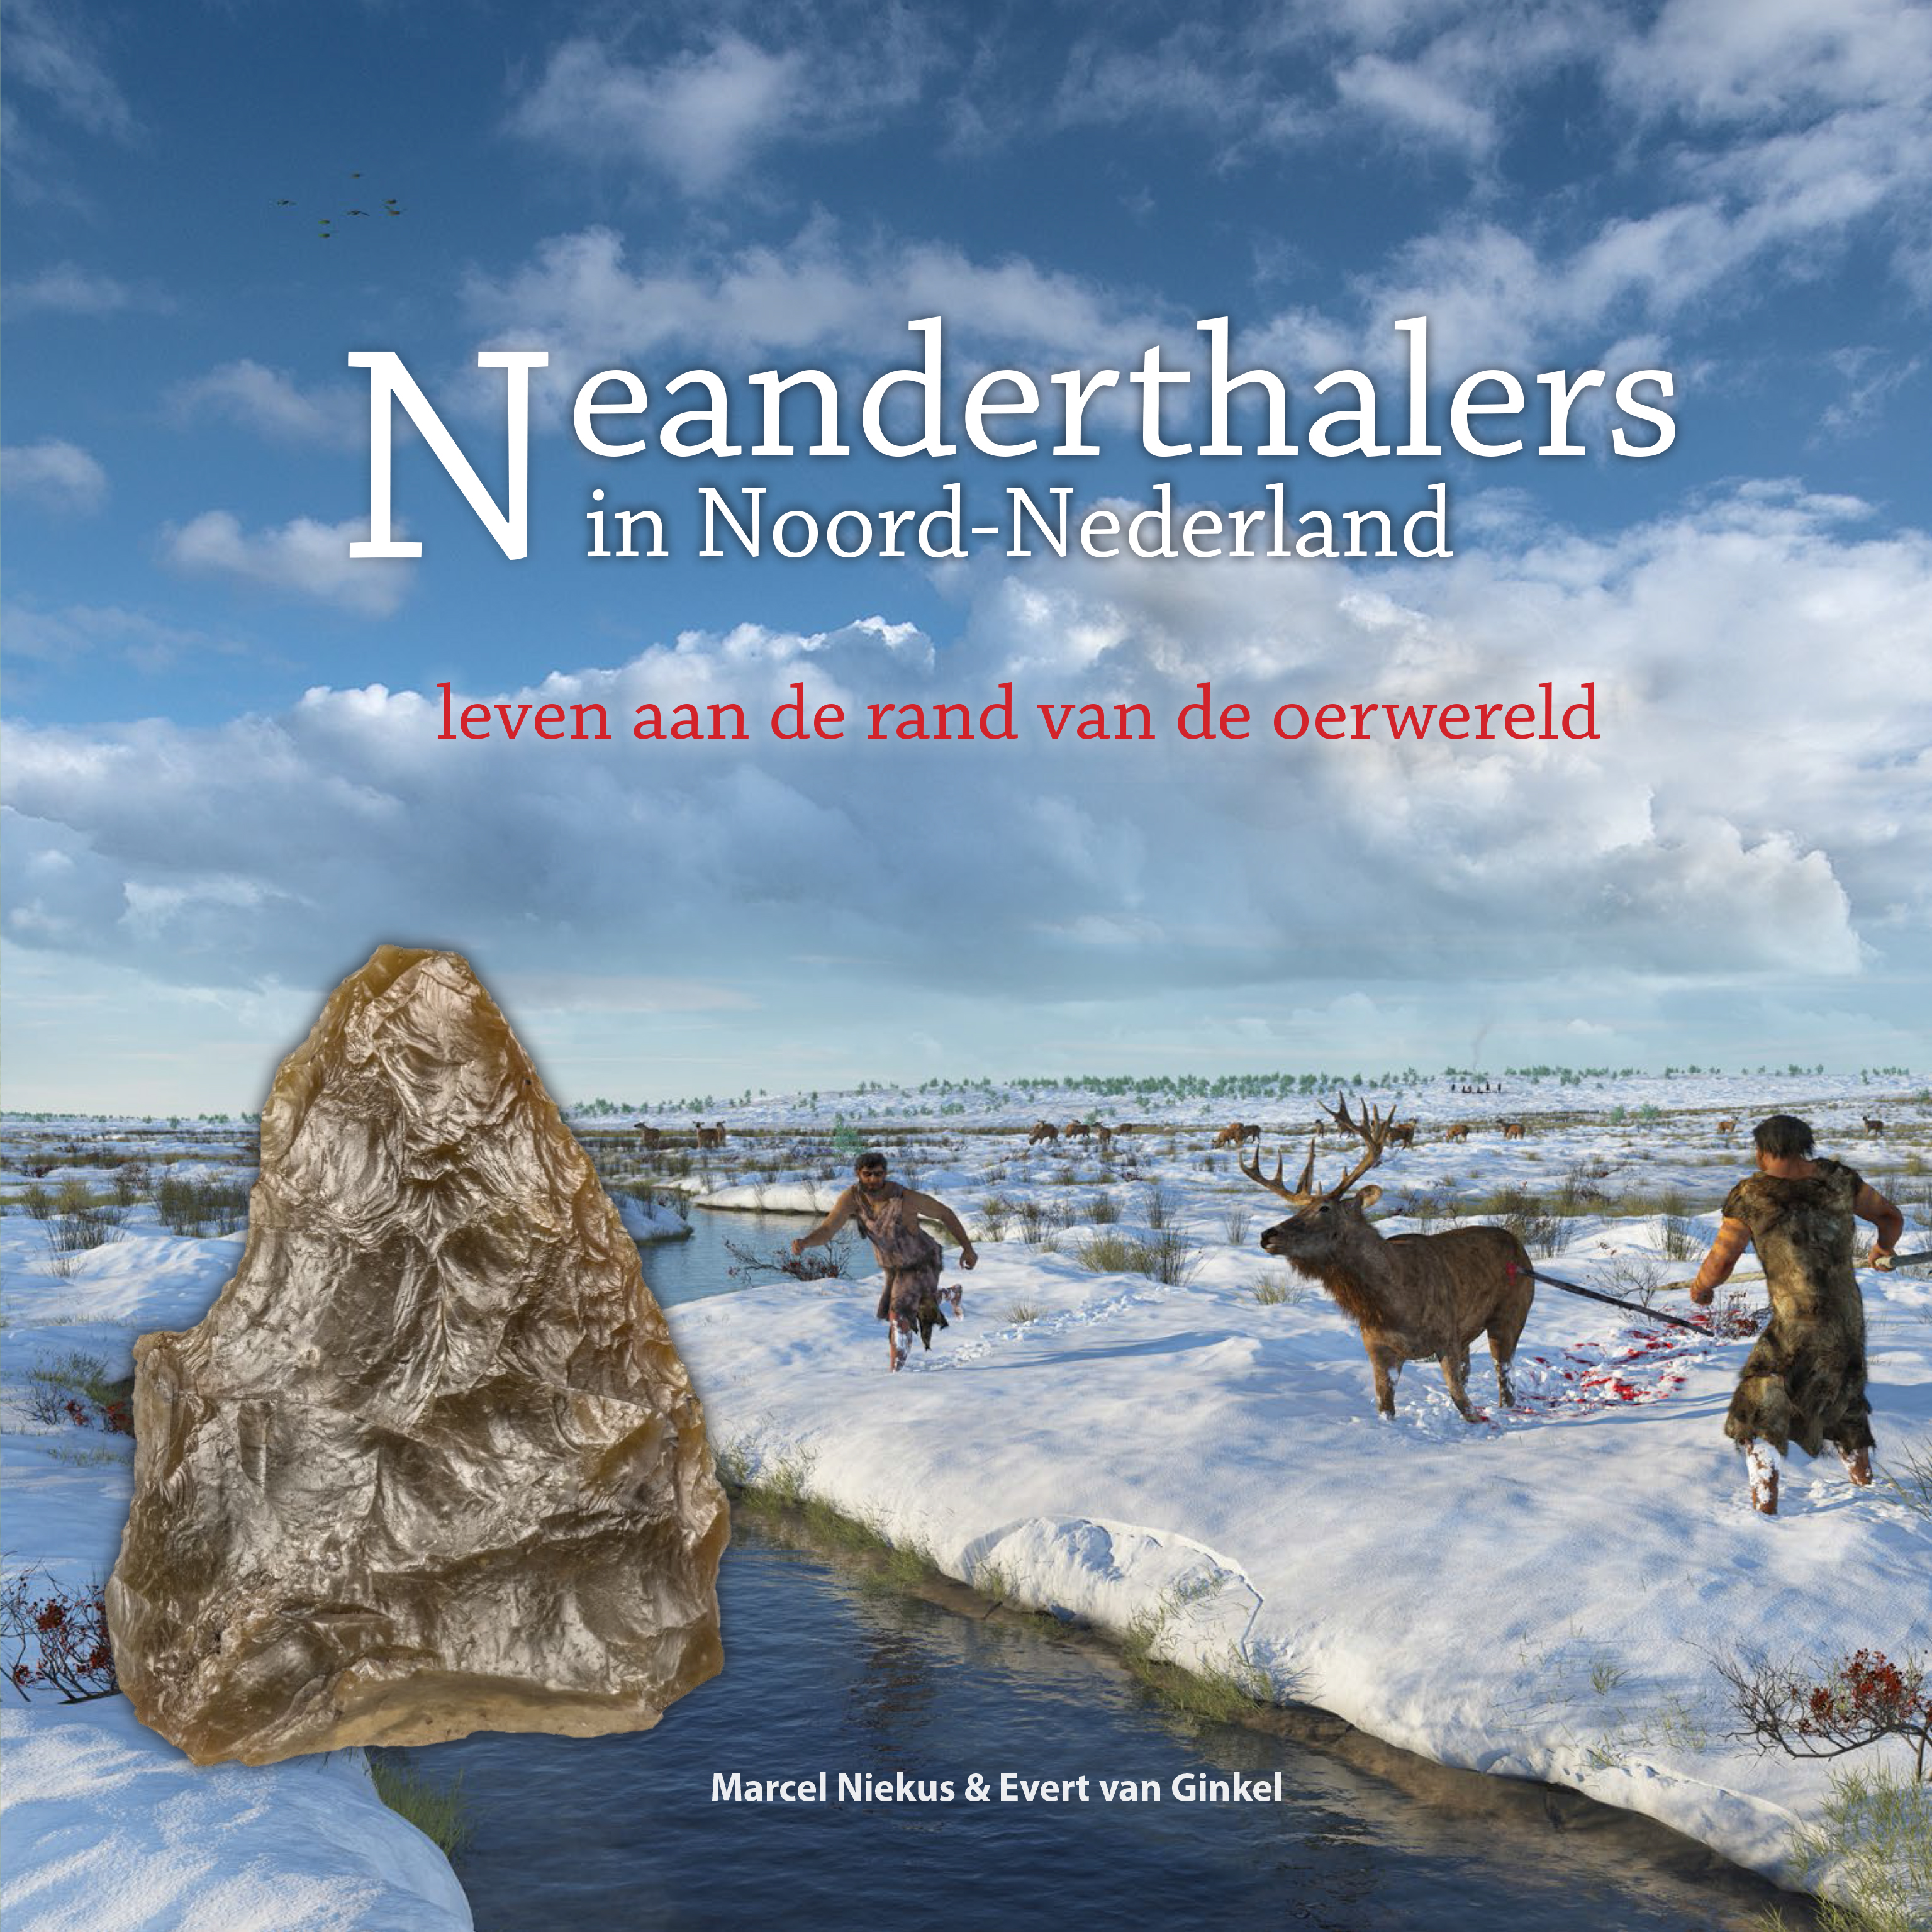 Lezing Marcel Riekus over Neanderthalers in Noord Nederland